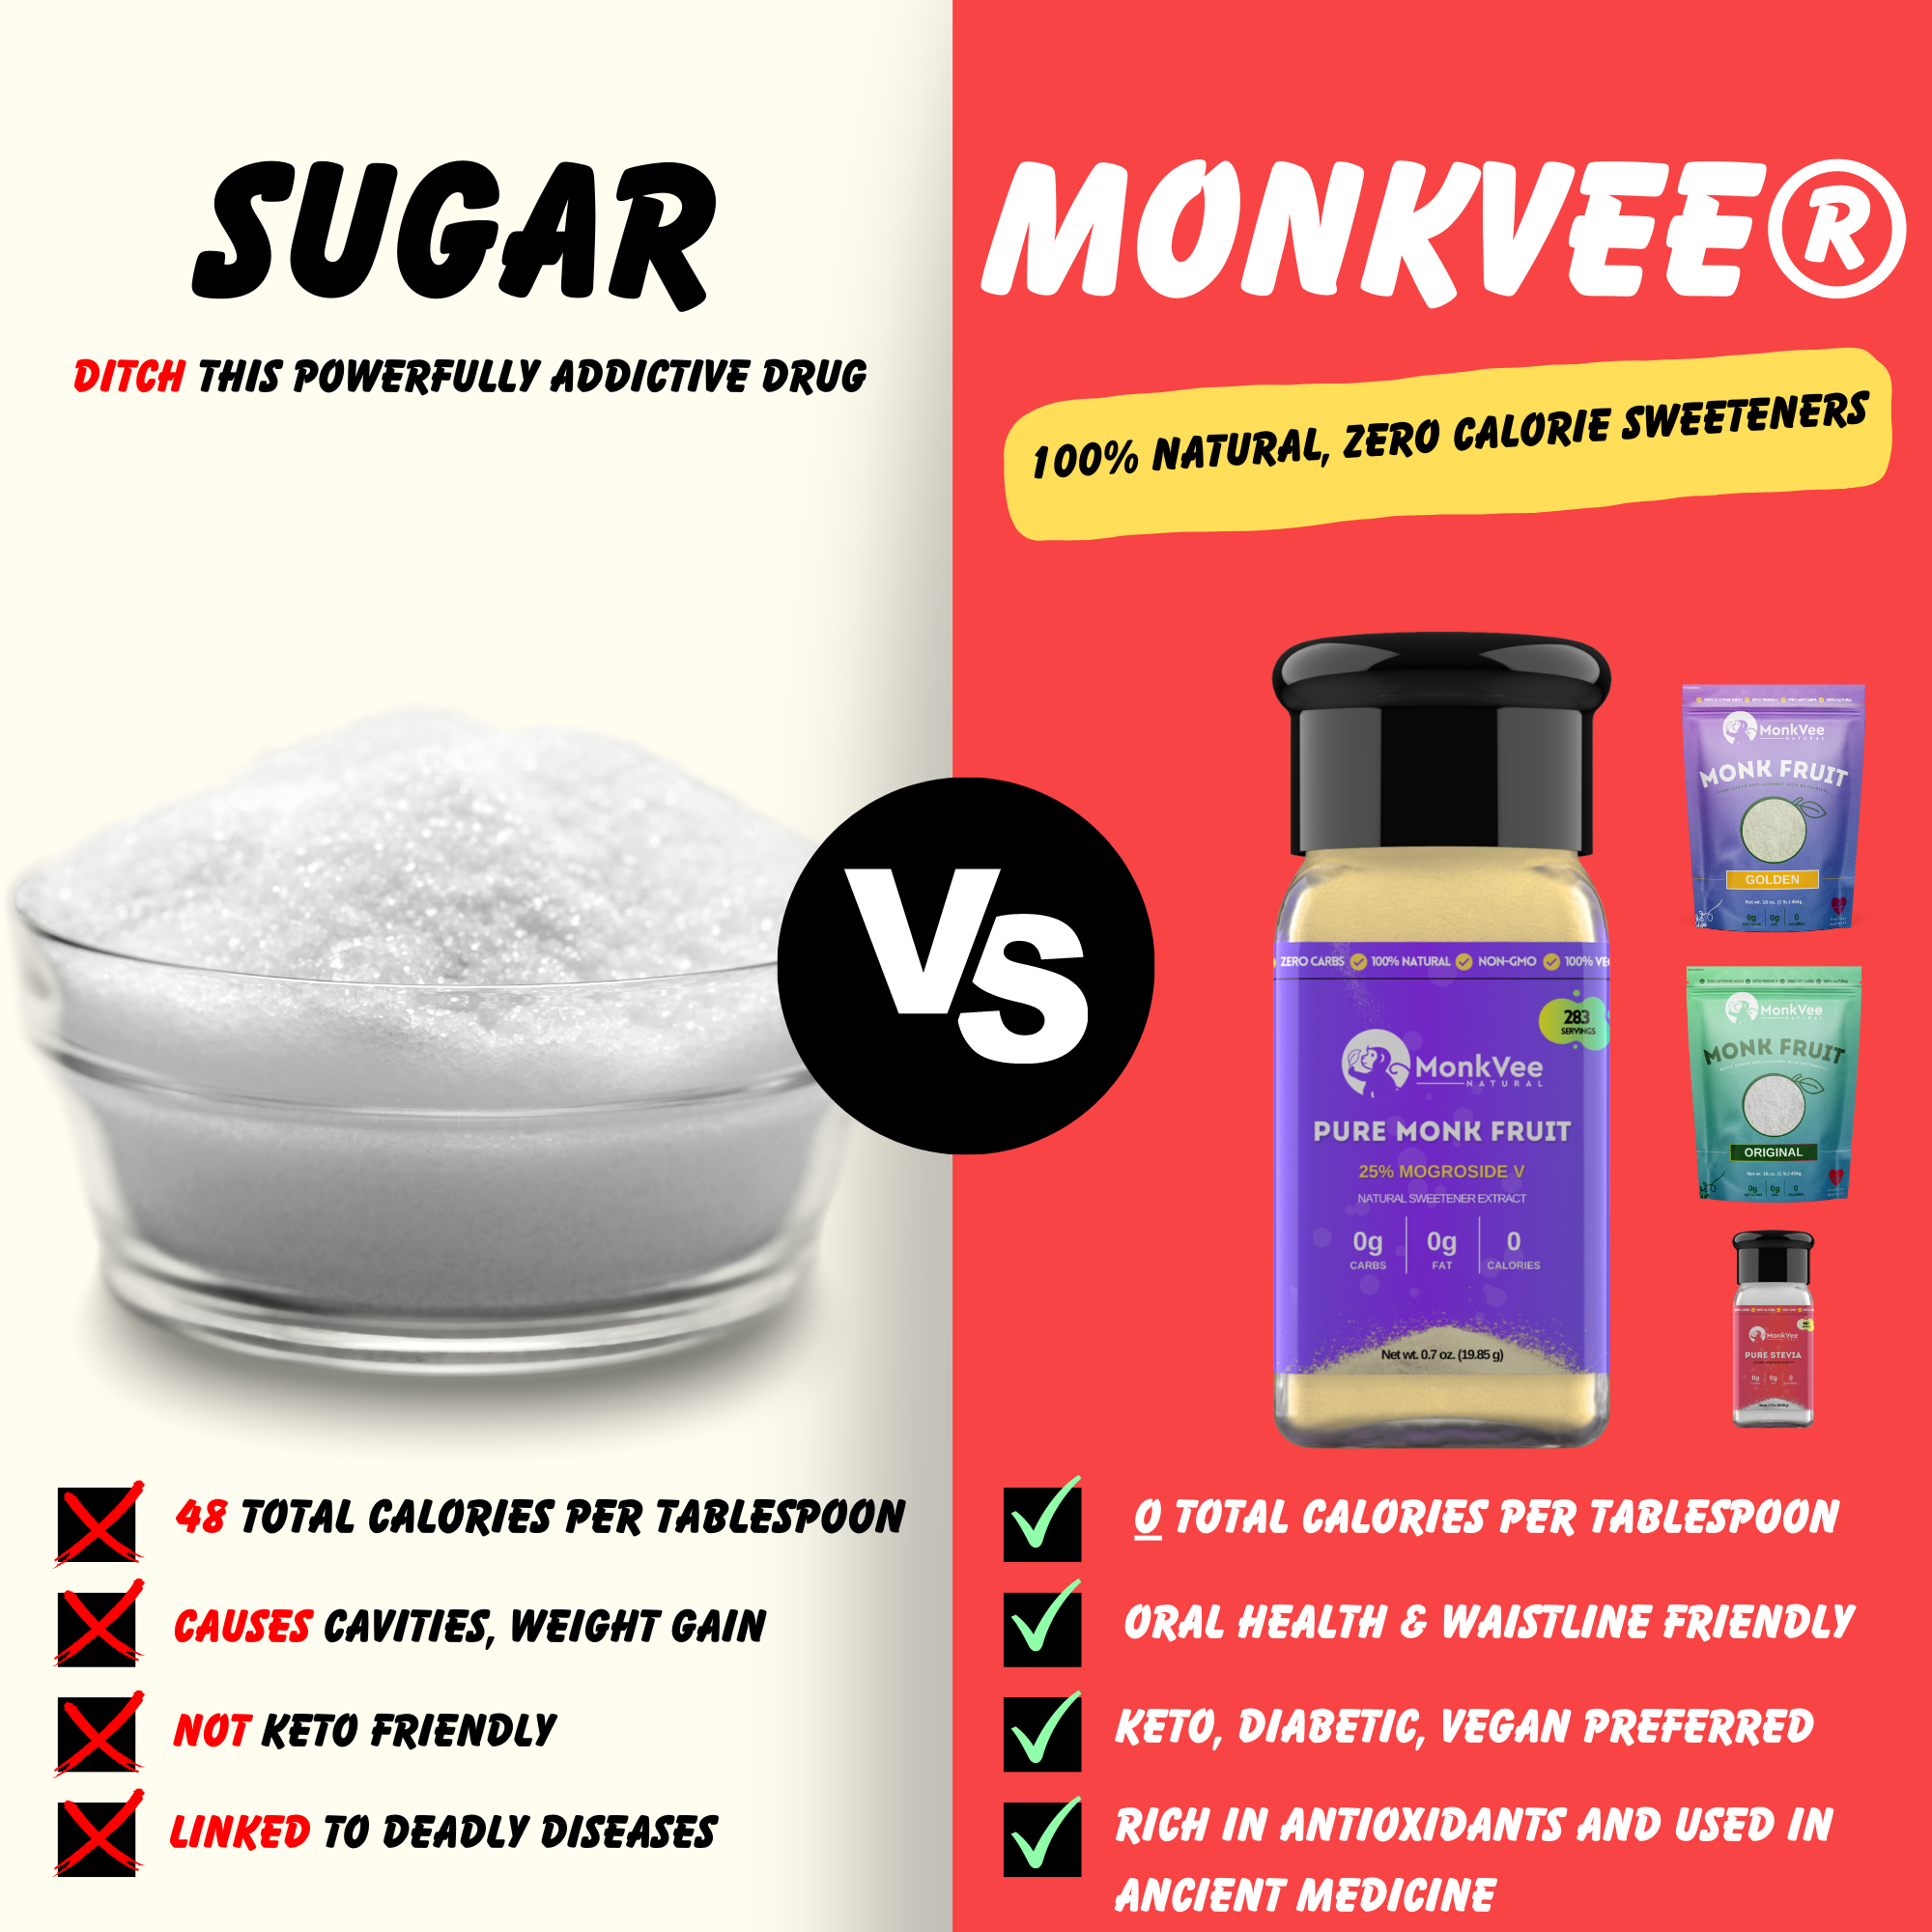 MonkVee® Original Monk Fruit Sweetener